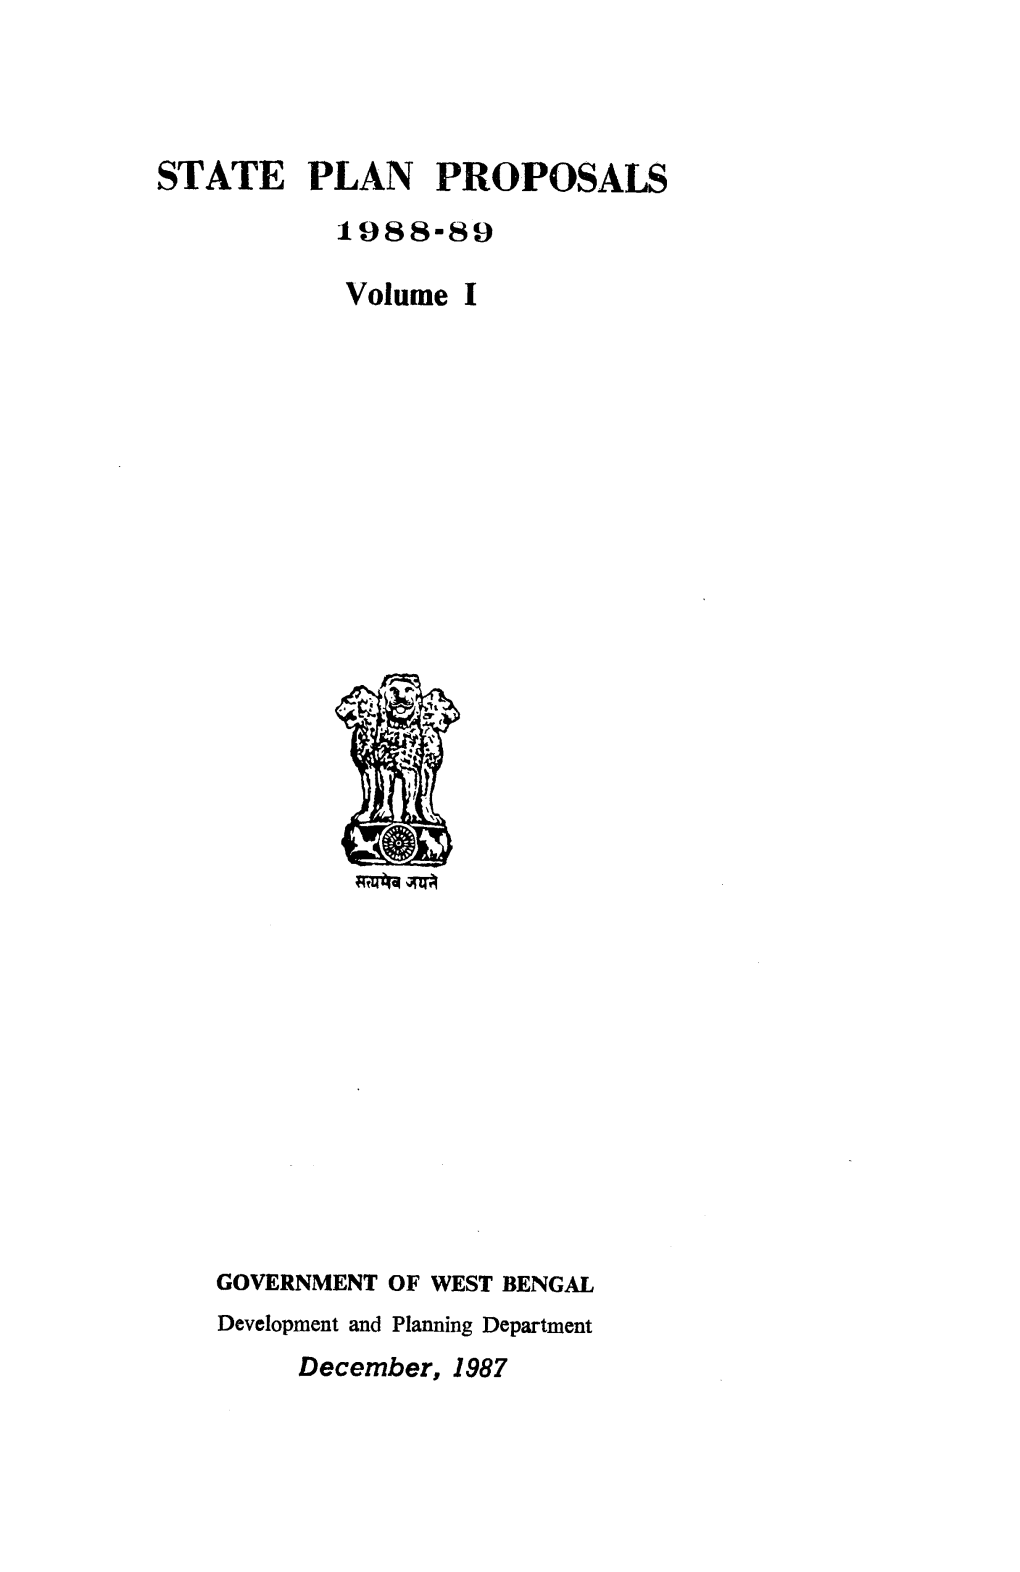 STATE PLAN PROPOSALS 1988-89 Volume I